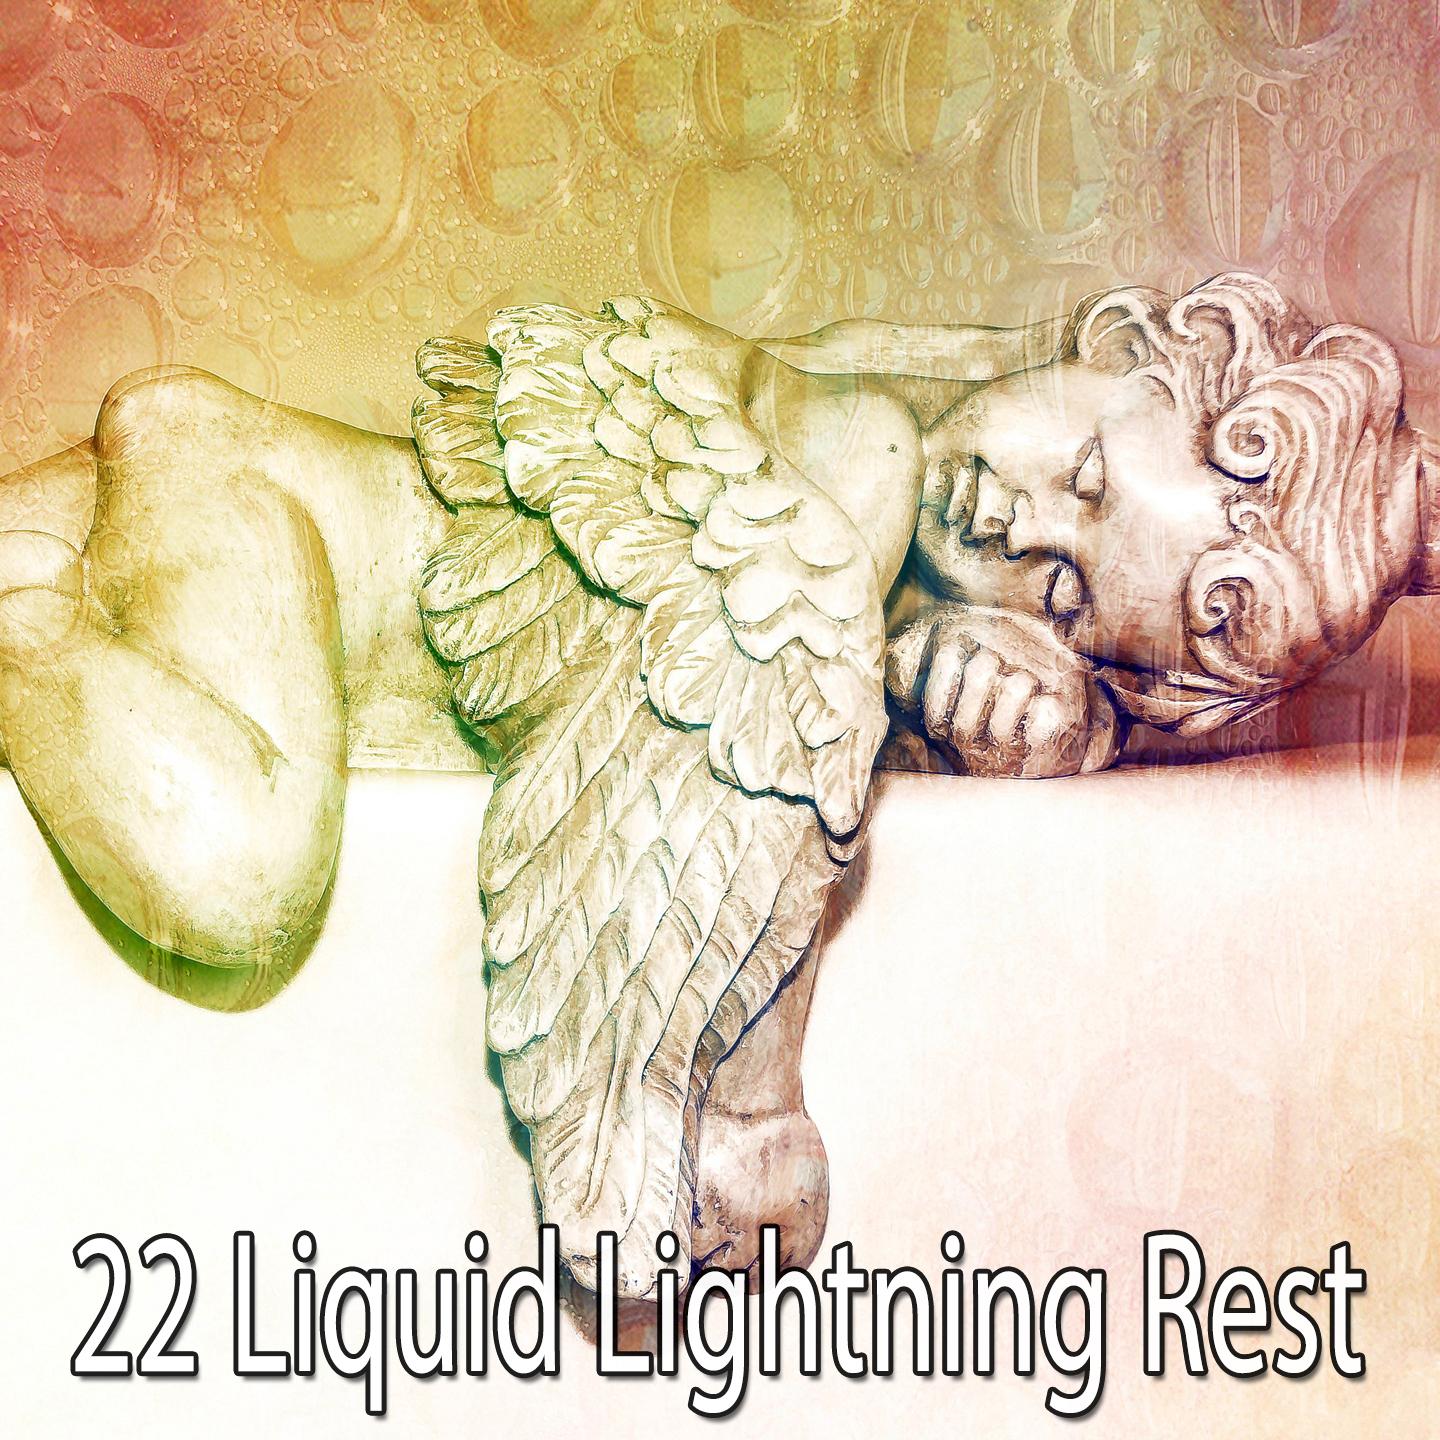 22 Liquid Lightning Rest